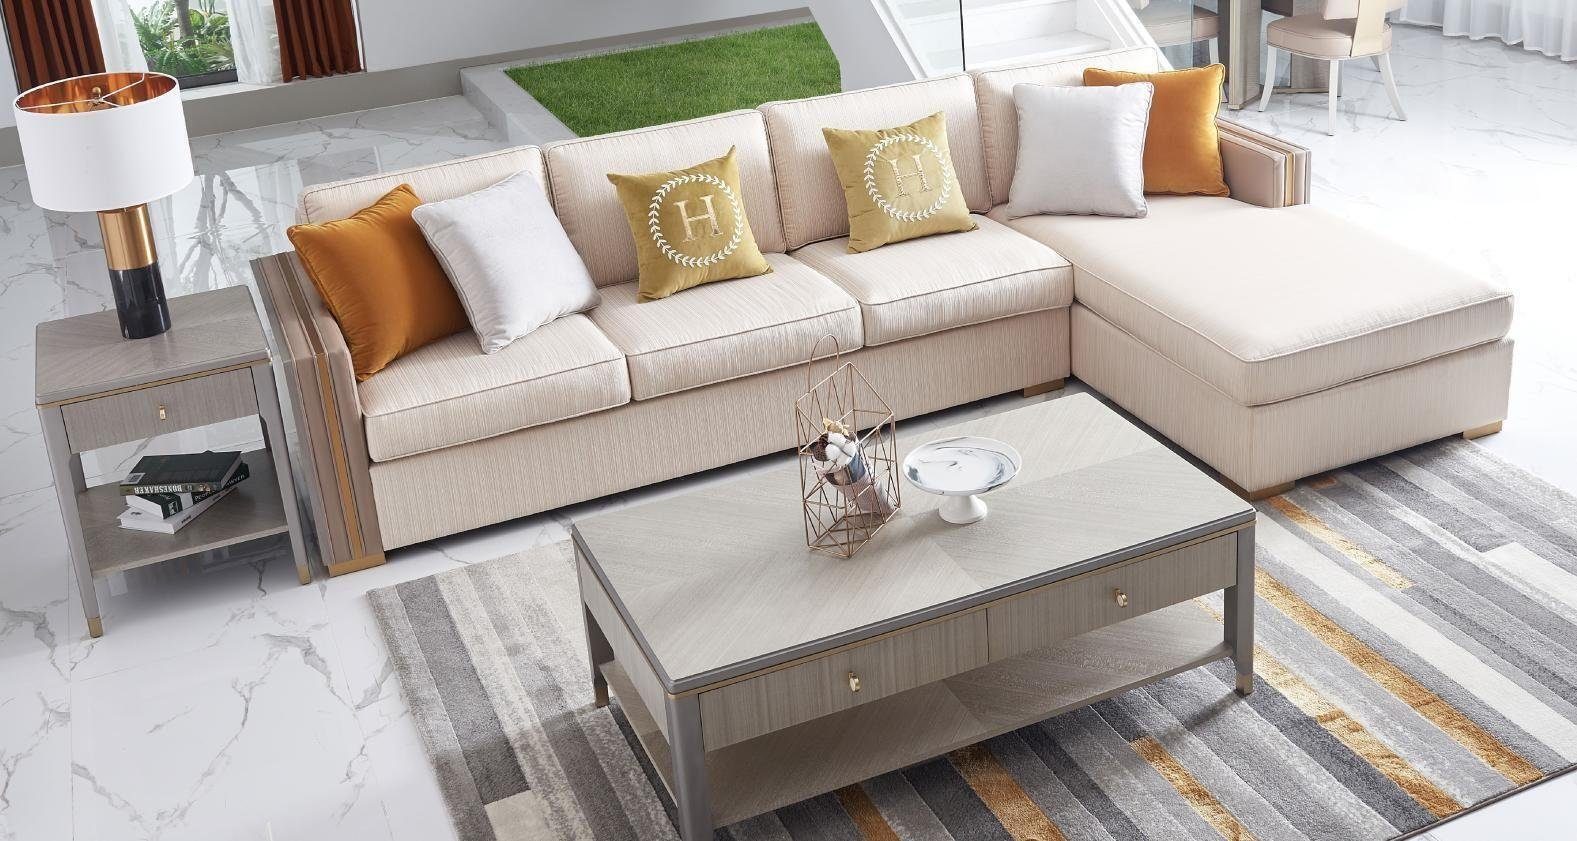 JVmoebel Wohnzimmer-Set, Wohnlandschaft Italien Sofa Eck Ecksofa Couch Couchen Textil Design